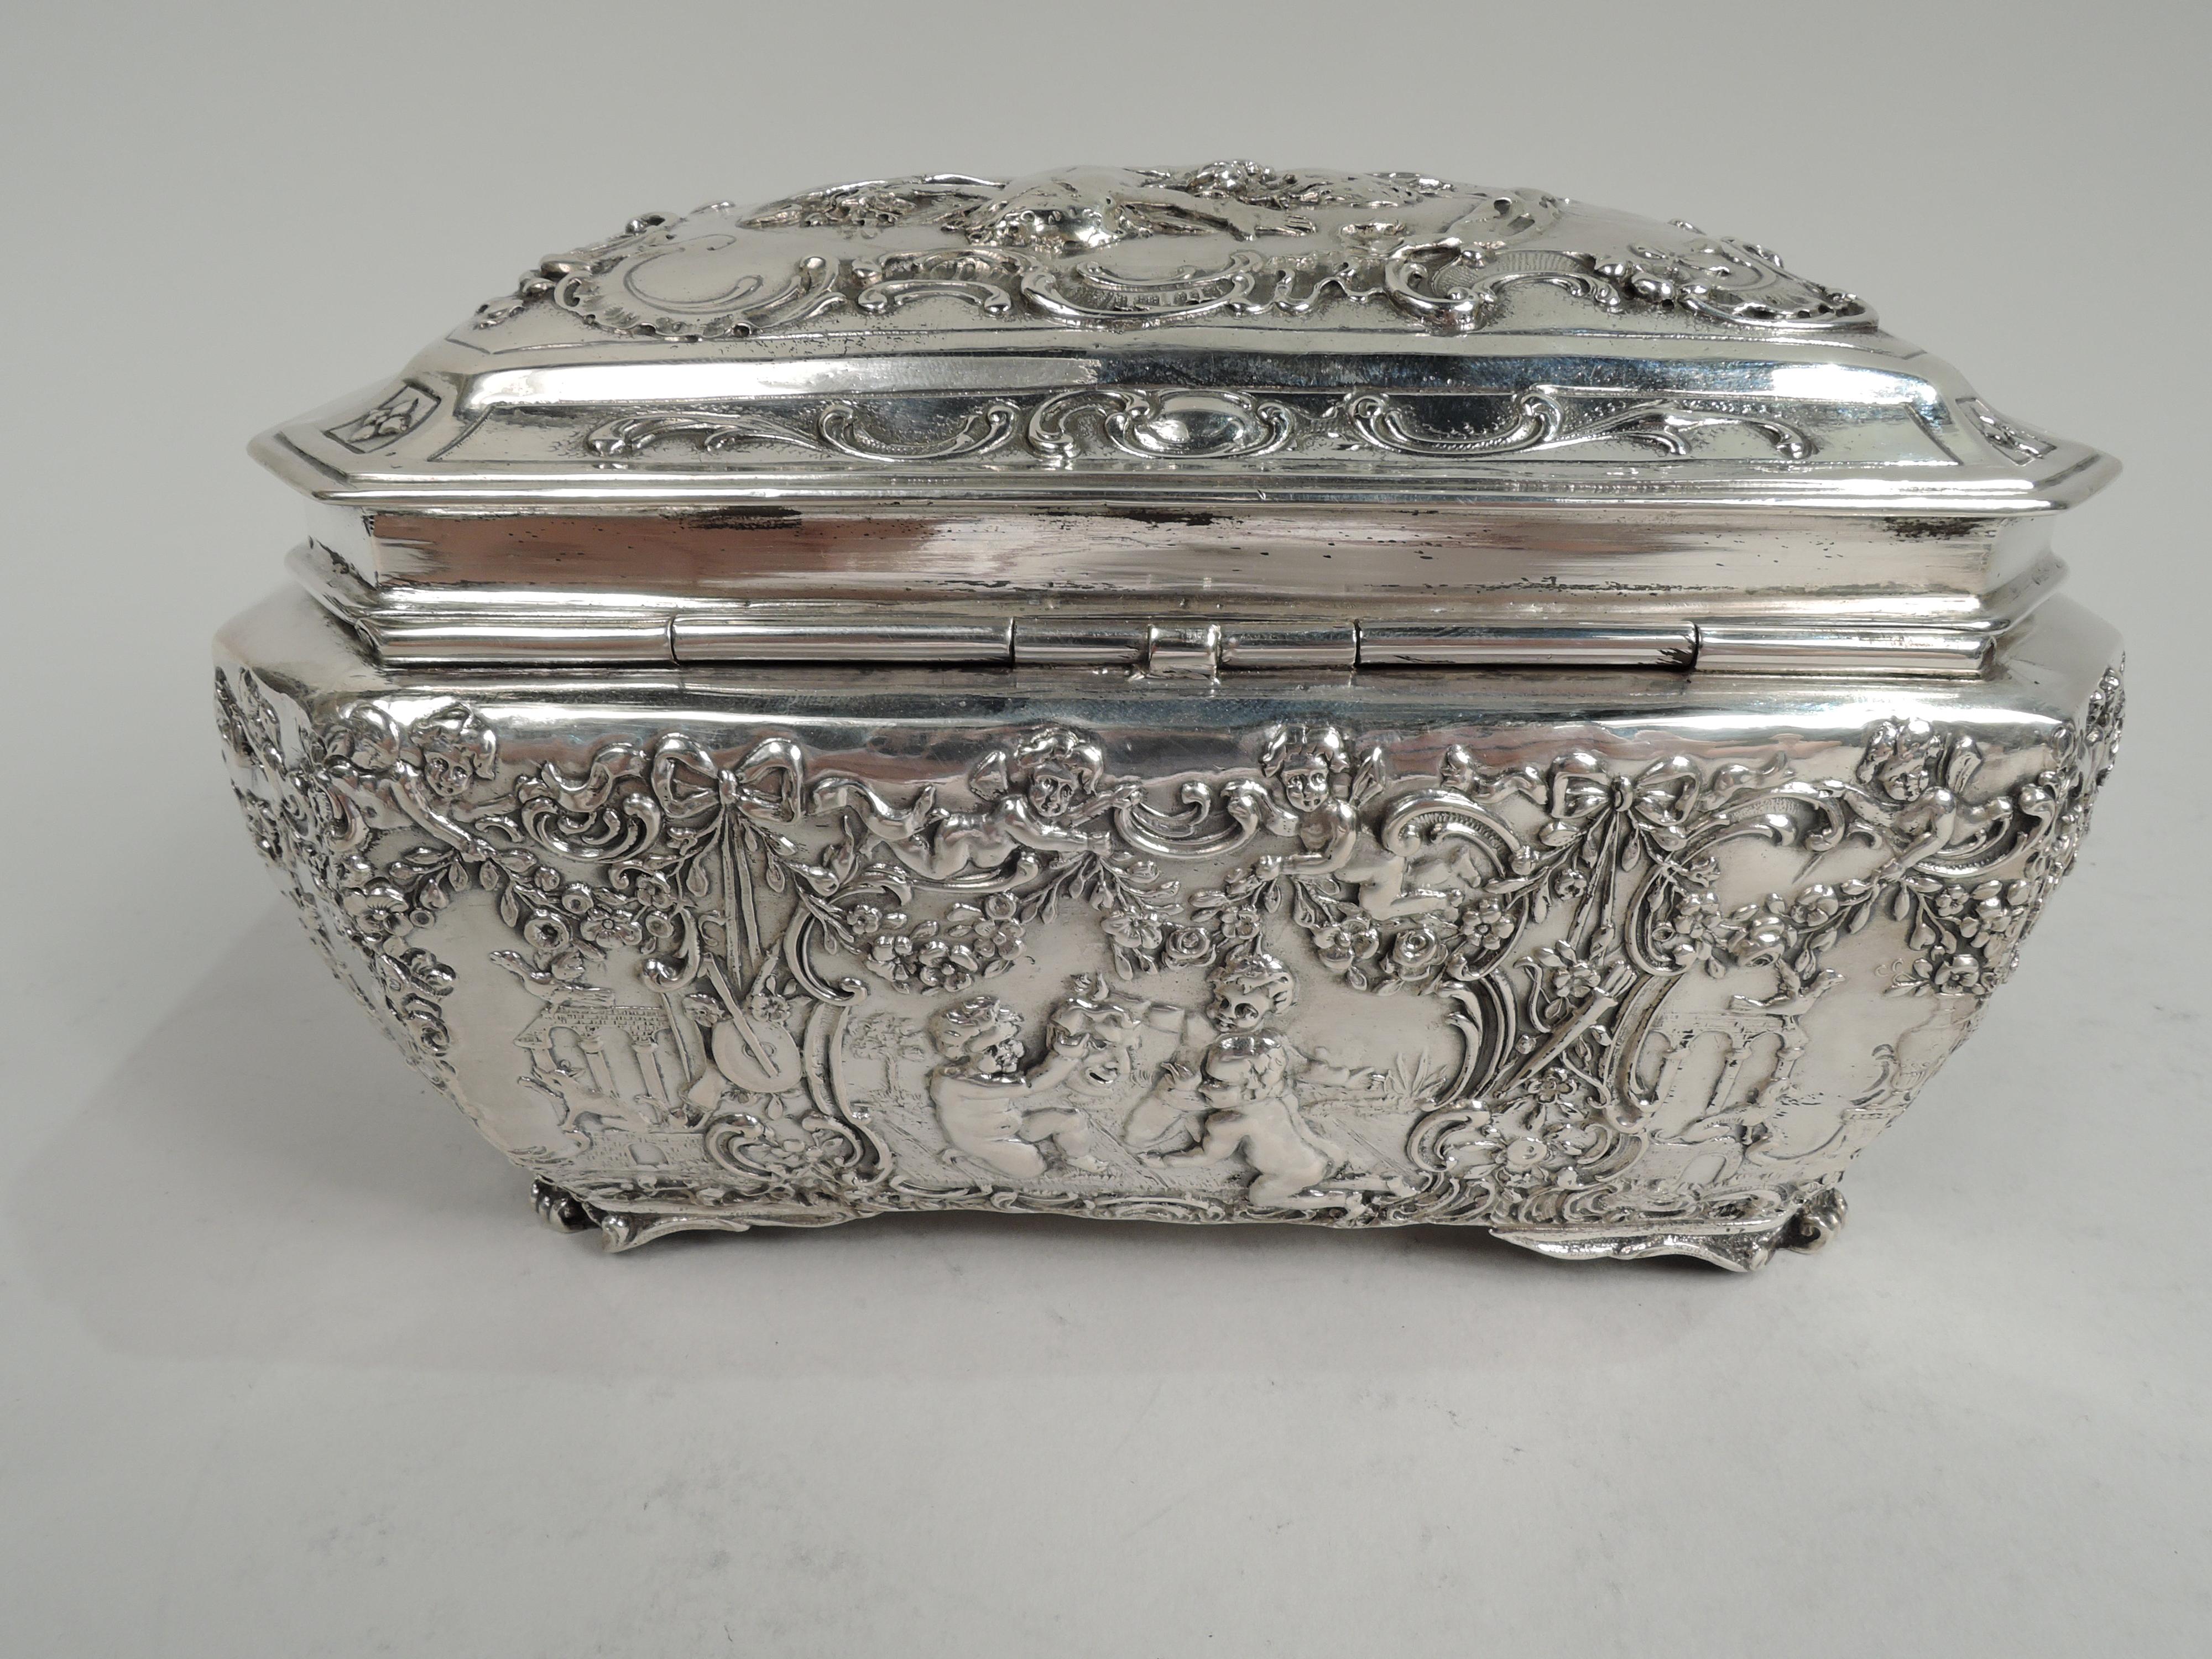 Rococo Revival Antique German Rococo Silver Keepsake Casket Box For Sale